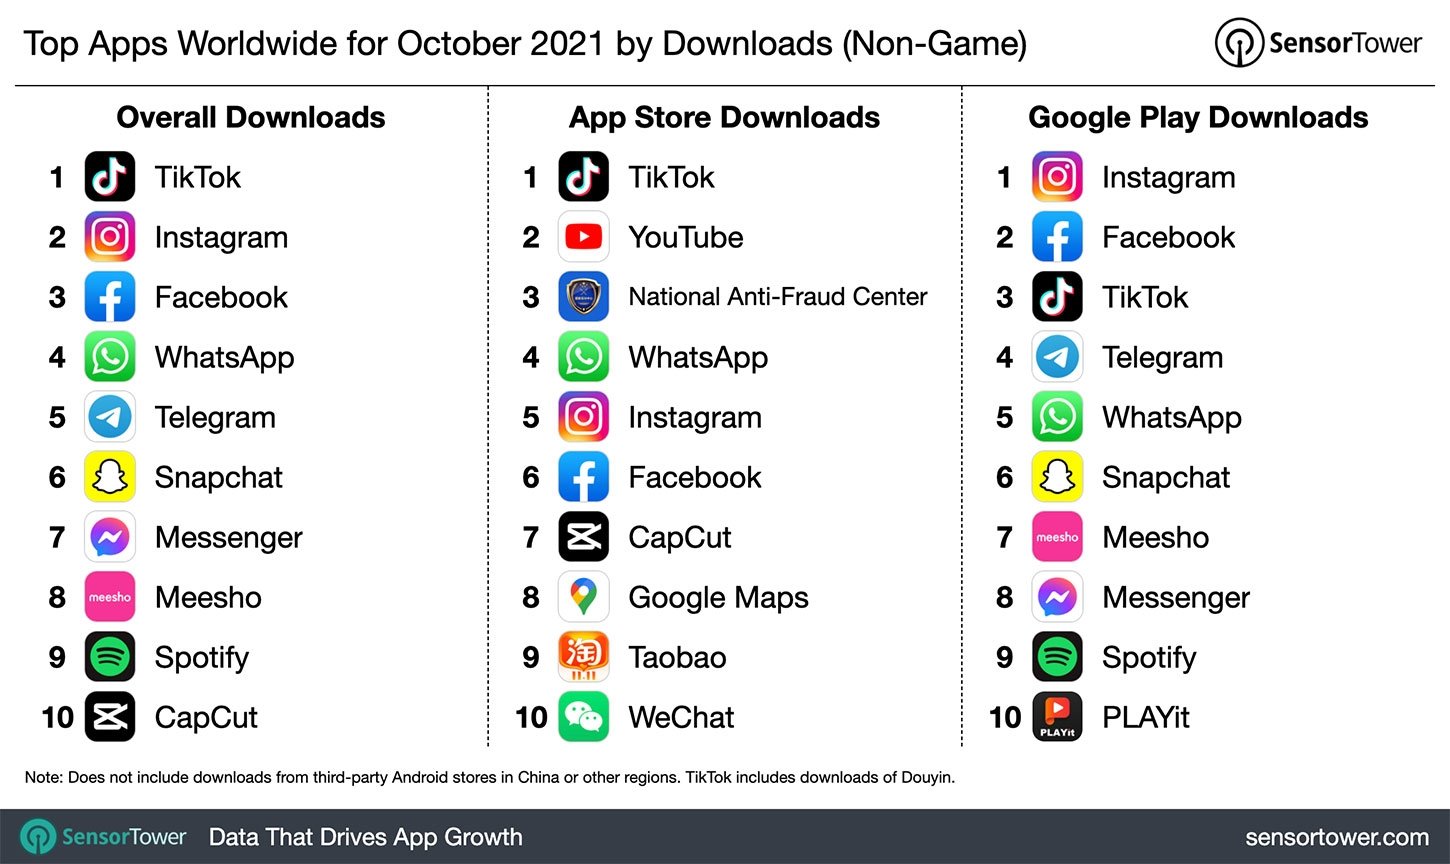 dados sobre downloads das diferentes apps